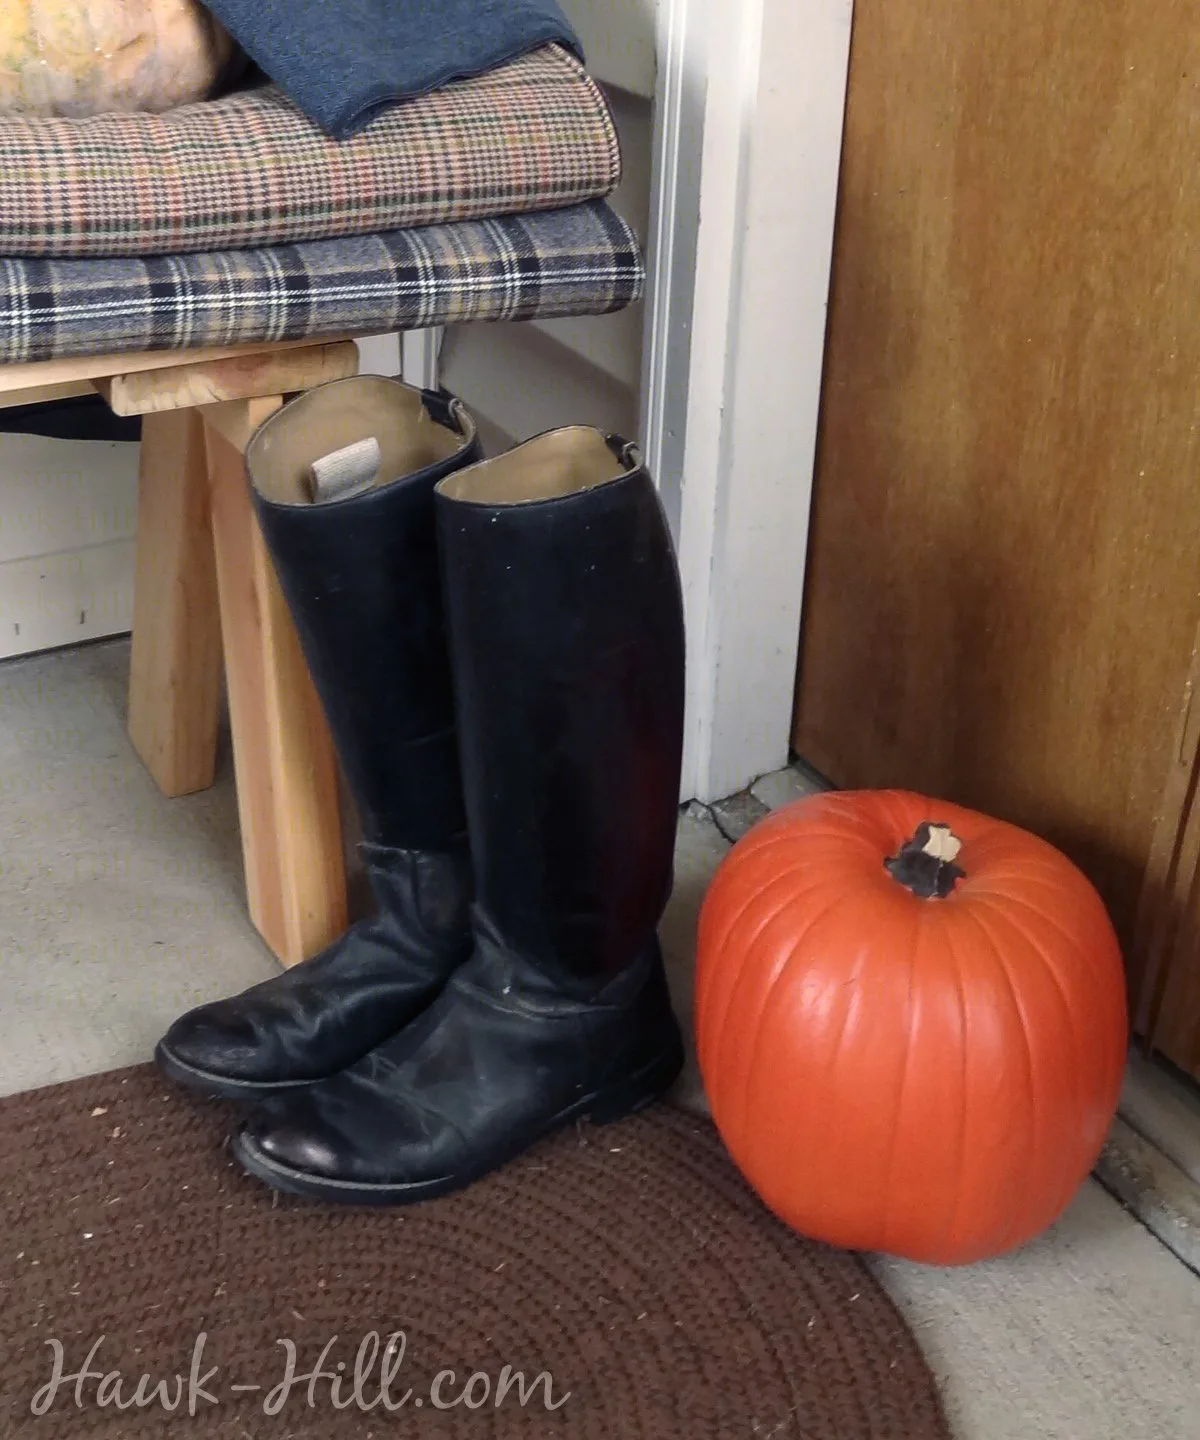 Black boots next to a pumpkin on a porch.